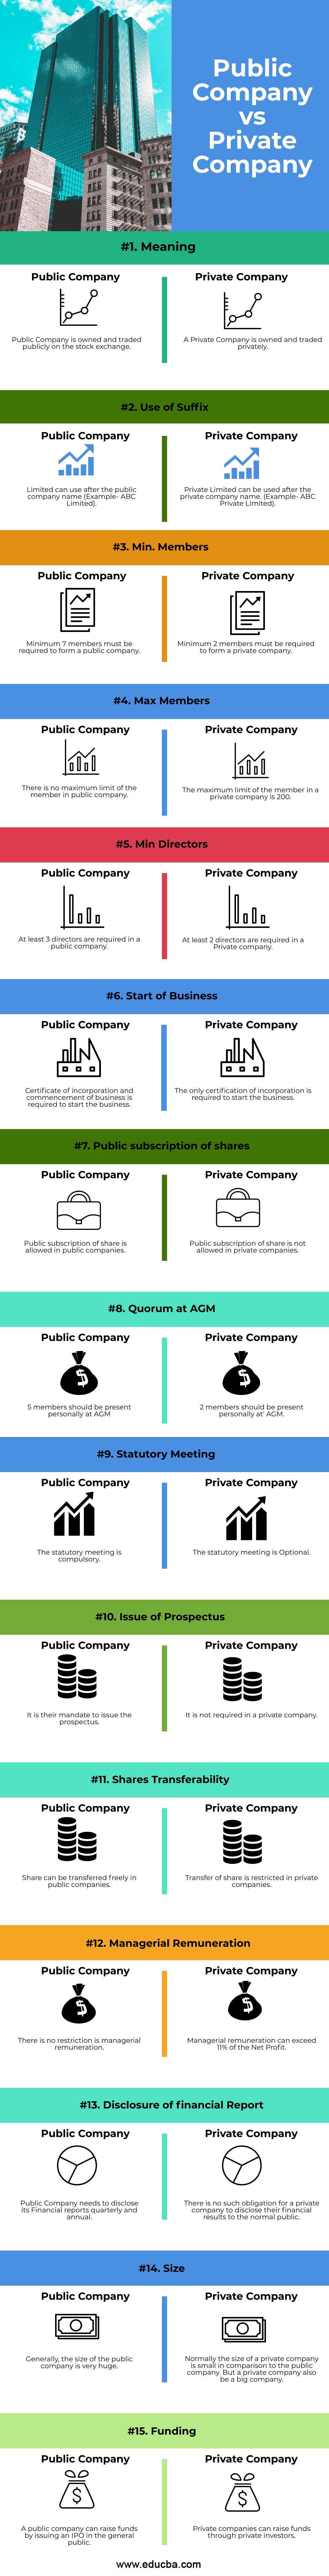 Empresa pública versus empresa privada